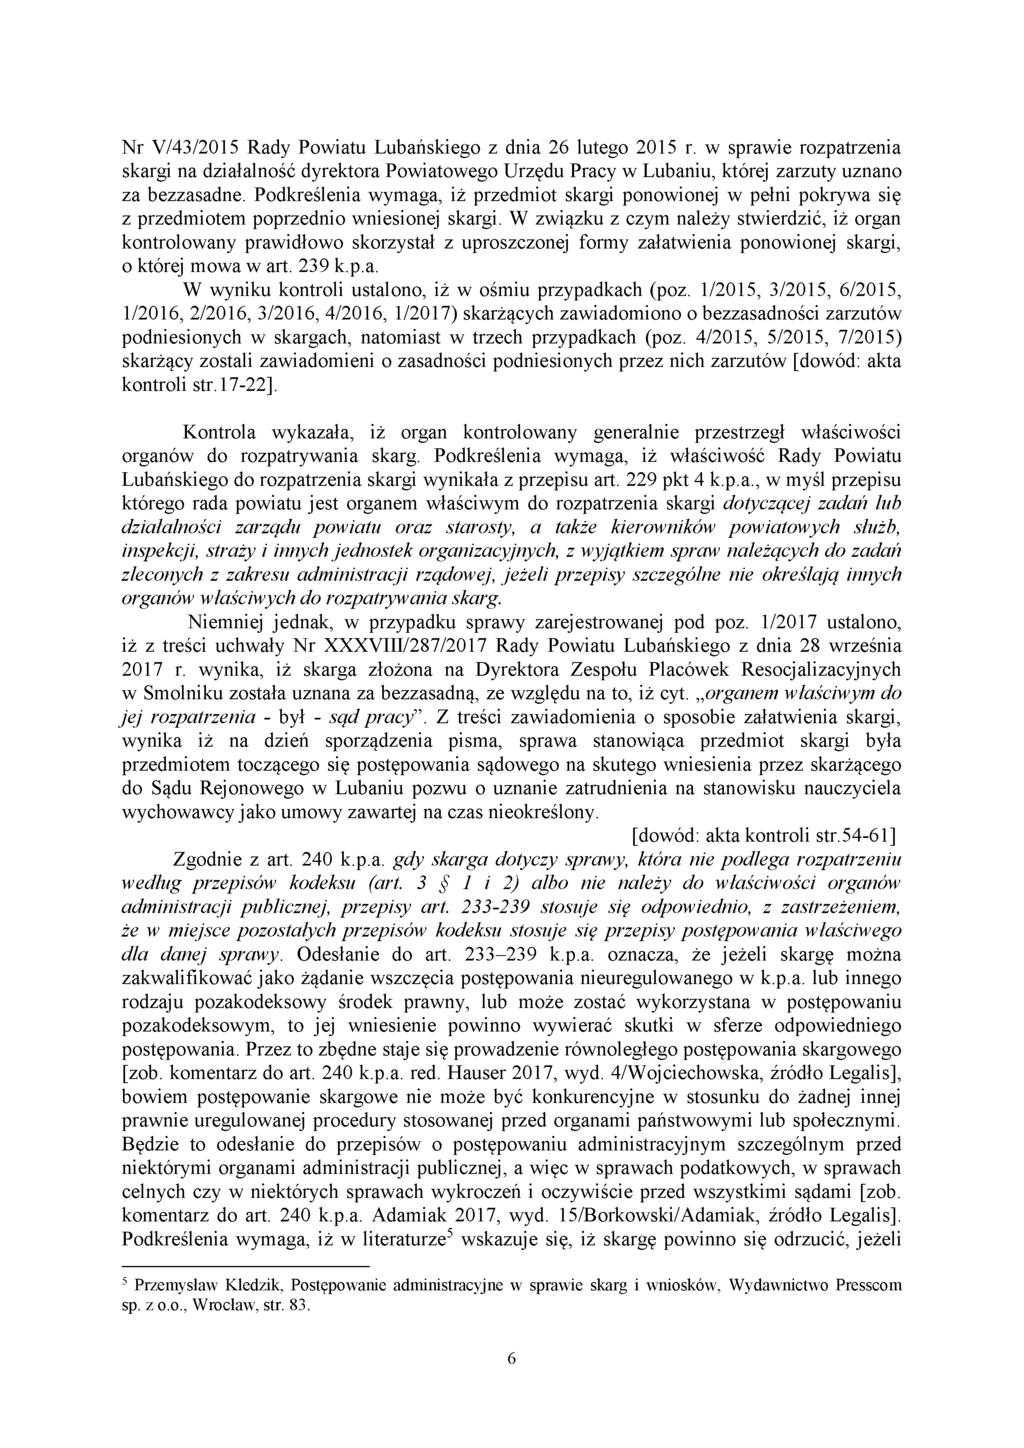 Nr V/43/2015 Rady Powiatu Lubańskiego z dnia 26 lutego 2015 r. w sprawie rozpatrzenia skargi na działalność dyrektora Powiatowego Urzędu Pracy w Lubaniu, której zarzuty uznano za bezzasadne.